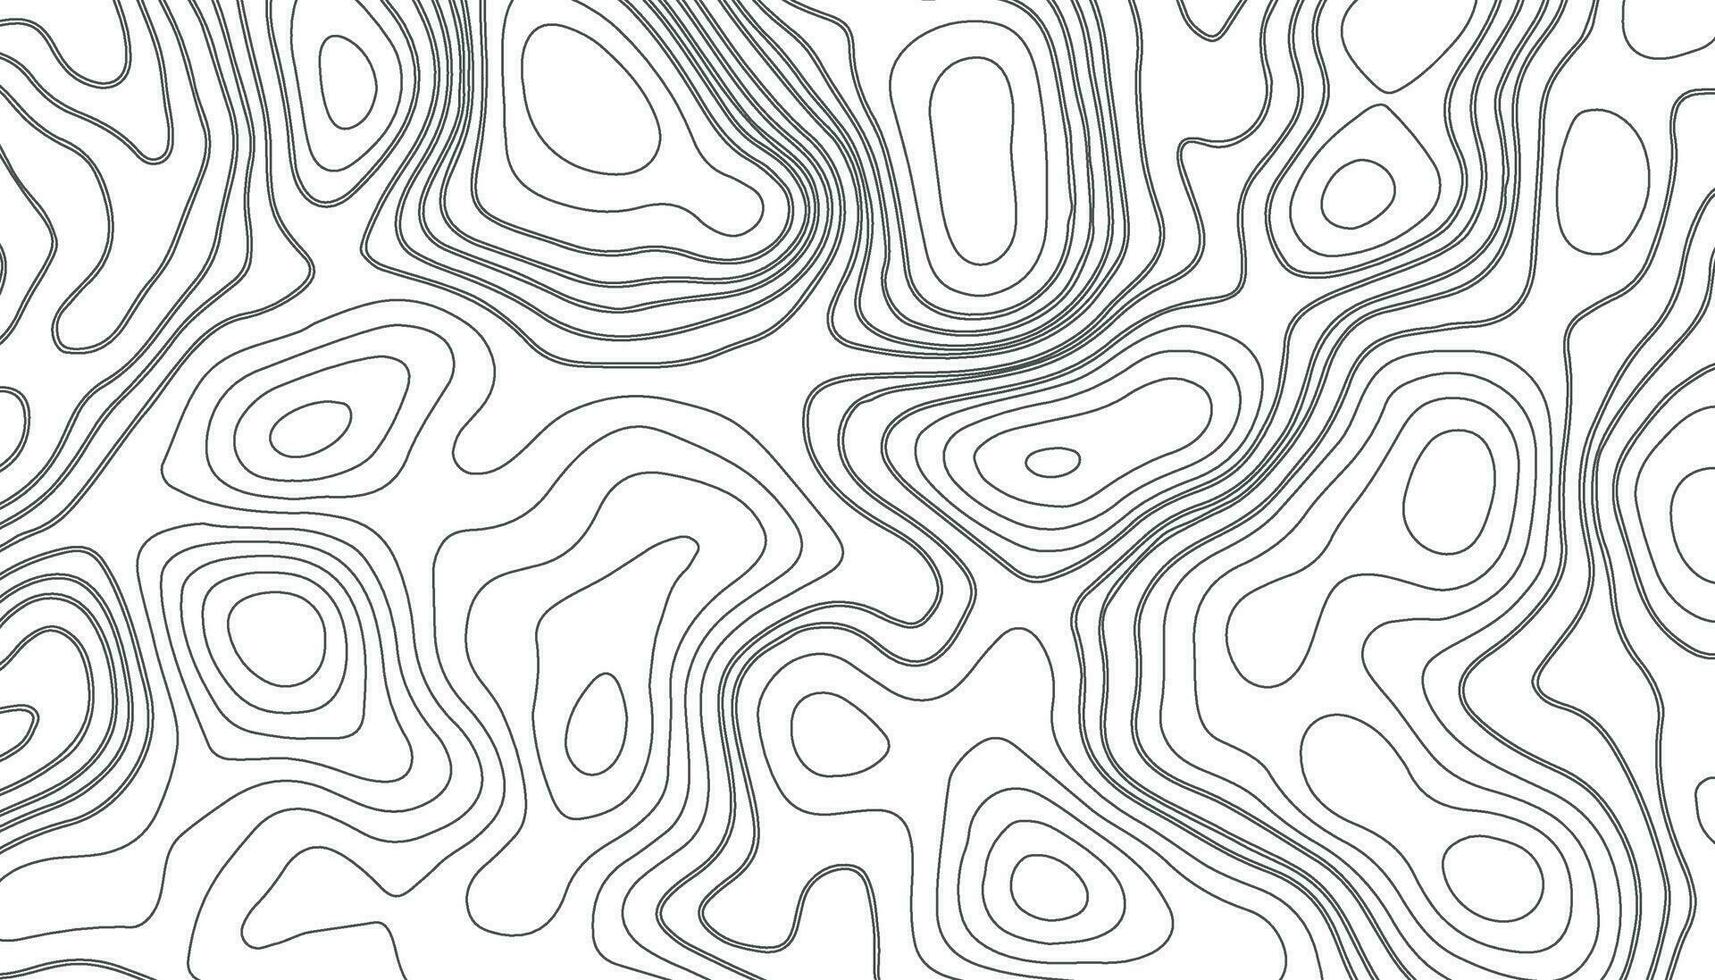 bakgrund av de topografisk Karta. elevation konturering översikt kartografi textur. geografisk abstrakt rutnät. trogen trådmodell landskap bakgrund. svart och vit sömlös mönster vektor